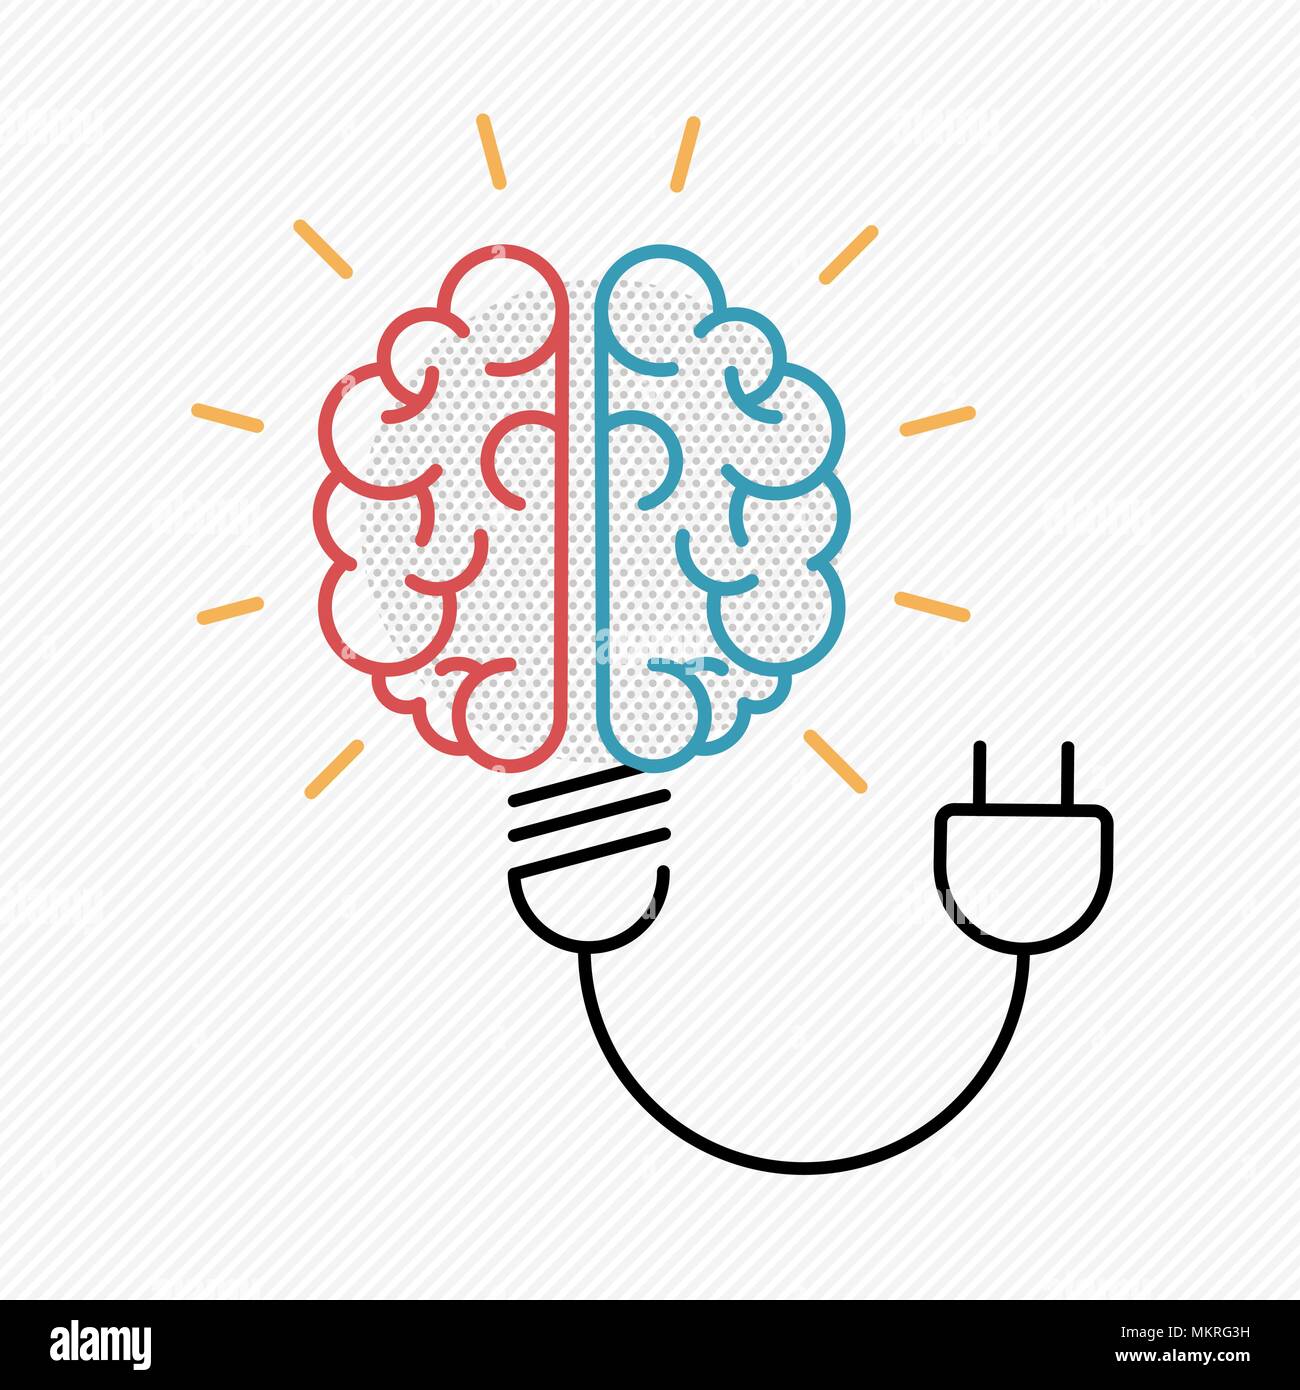 Idea nuova nozione illustrazione nella moderna progettazione di contorno con il cervello umano come lampadina elettrica. EPS10 vettore. Illustrazione Vettoriale